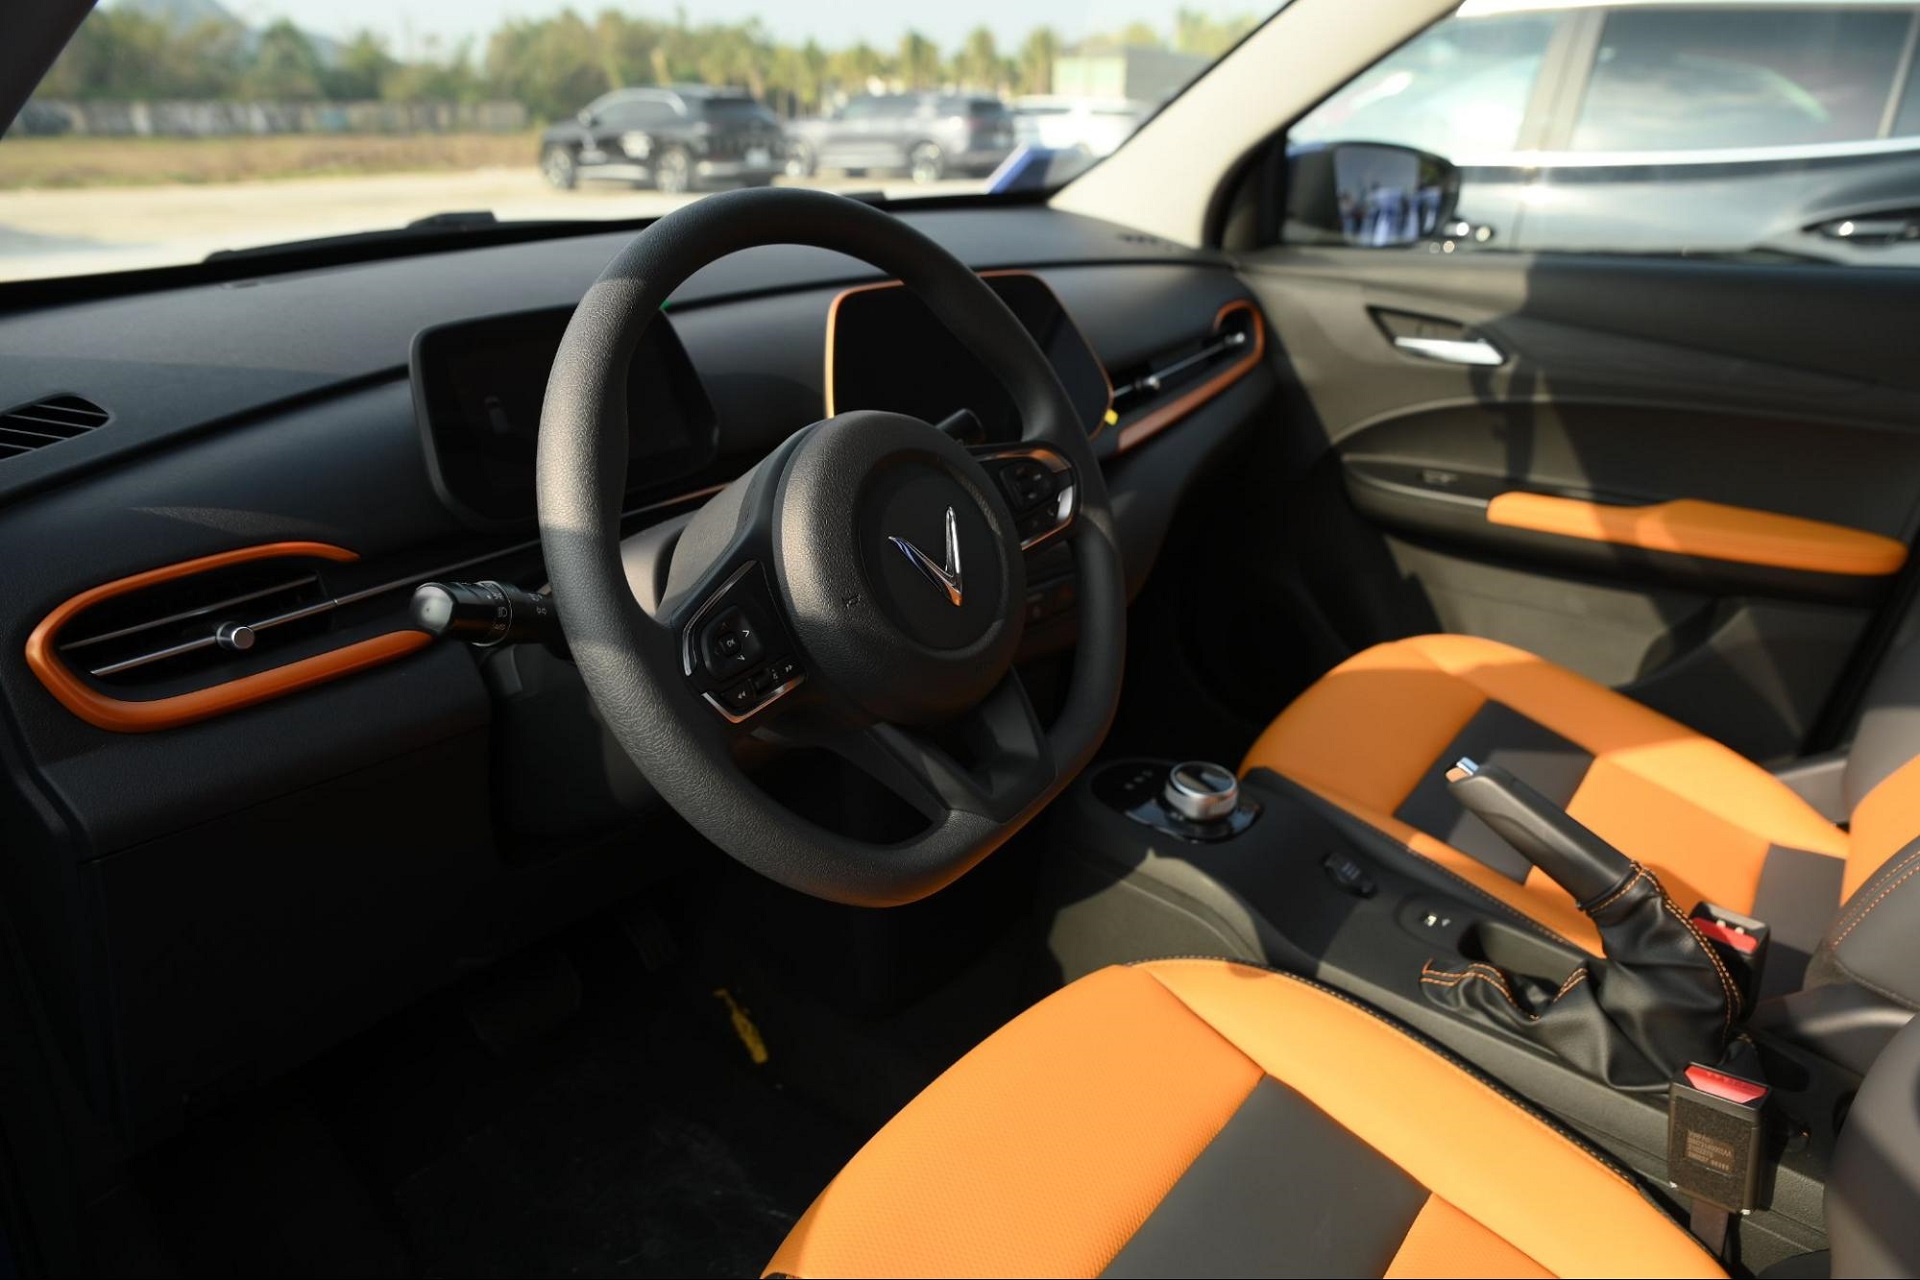 VF 5 Plus là mẫu xe thu hút sự chú ý lớn của khách tham quan vì là model mới nhất, có thiết kế nhỏ gọn bắt mắt cùngnhiều lựa chọn màu sơn ngoại thất và nội thất ấn tượng. Xecó tới 16 lựa chọn màu sơn bên ngoài và 3 màu nội thất bên trong, giúp mang đến tính cá nhân hóa cao cho chủ xe.